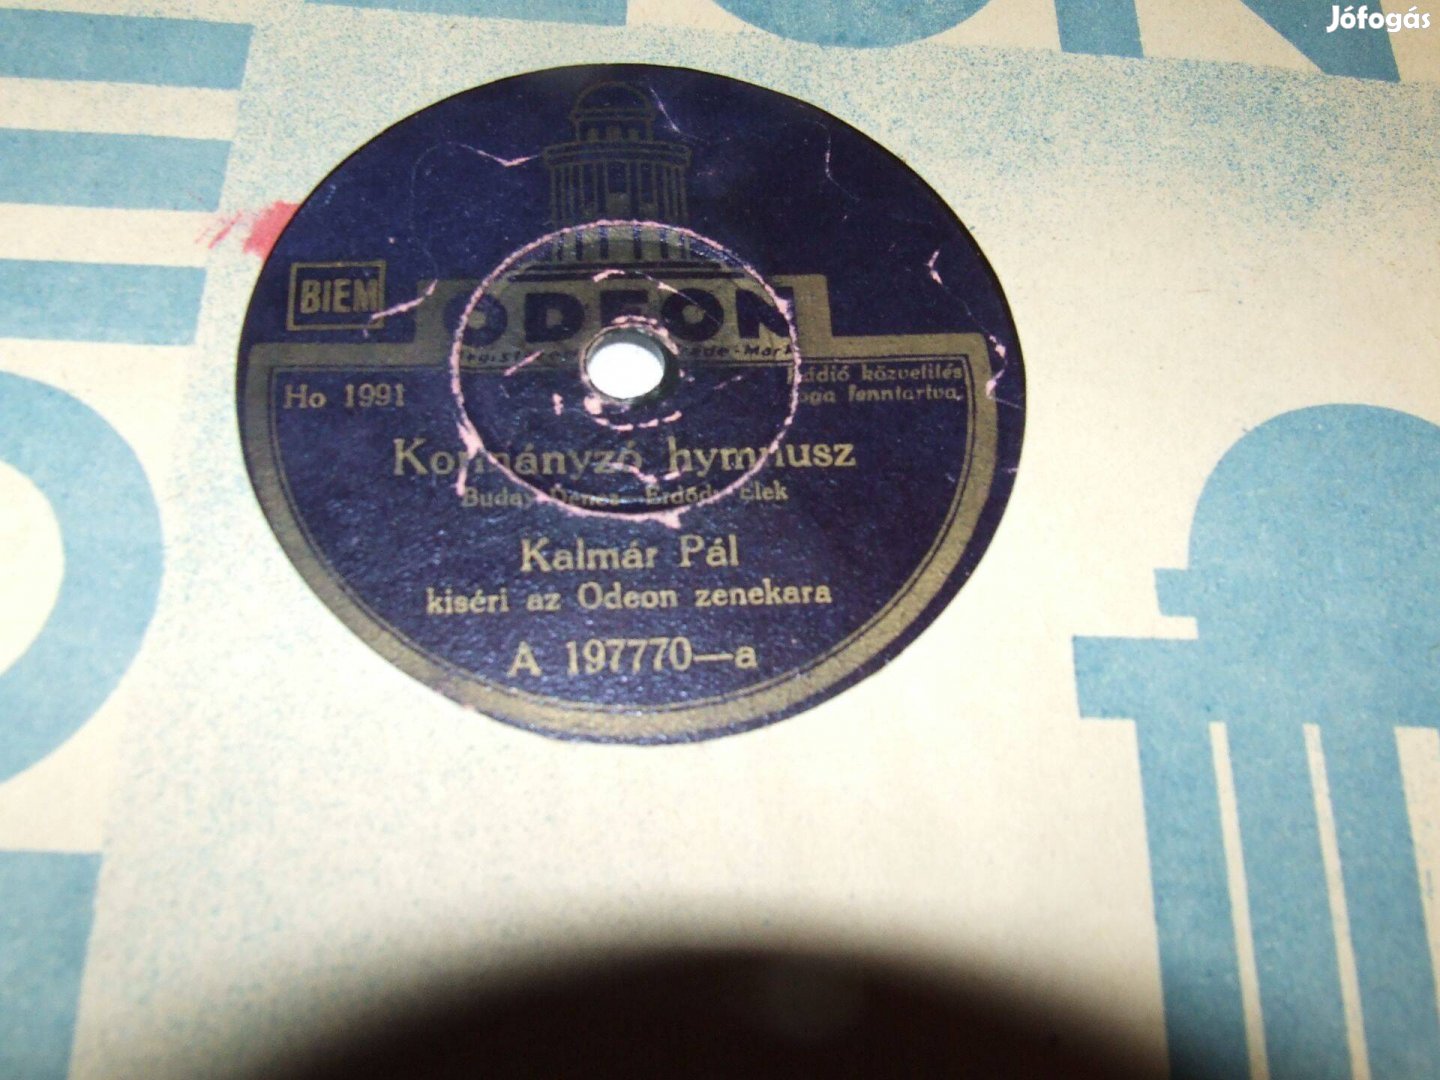 Kalmár Pál: Kormányzó himnusz - nagyon ritka gramofonlemez eladó!